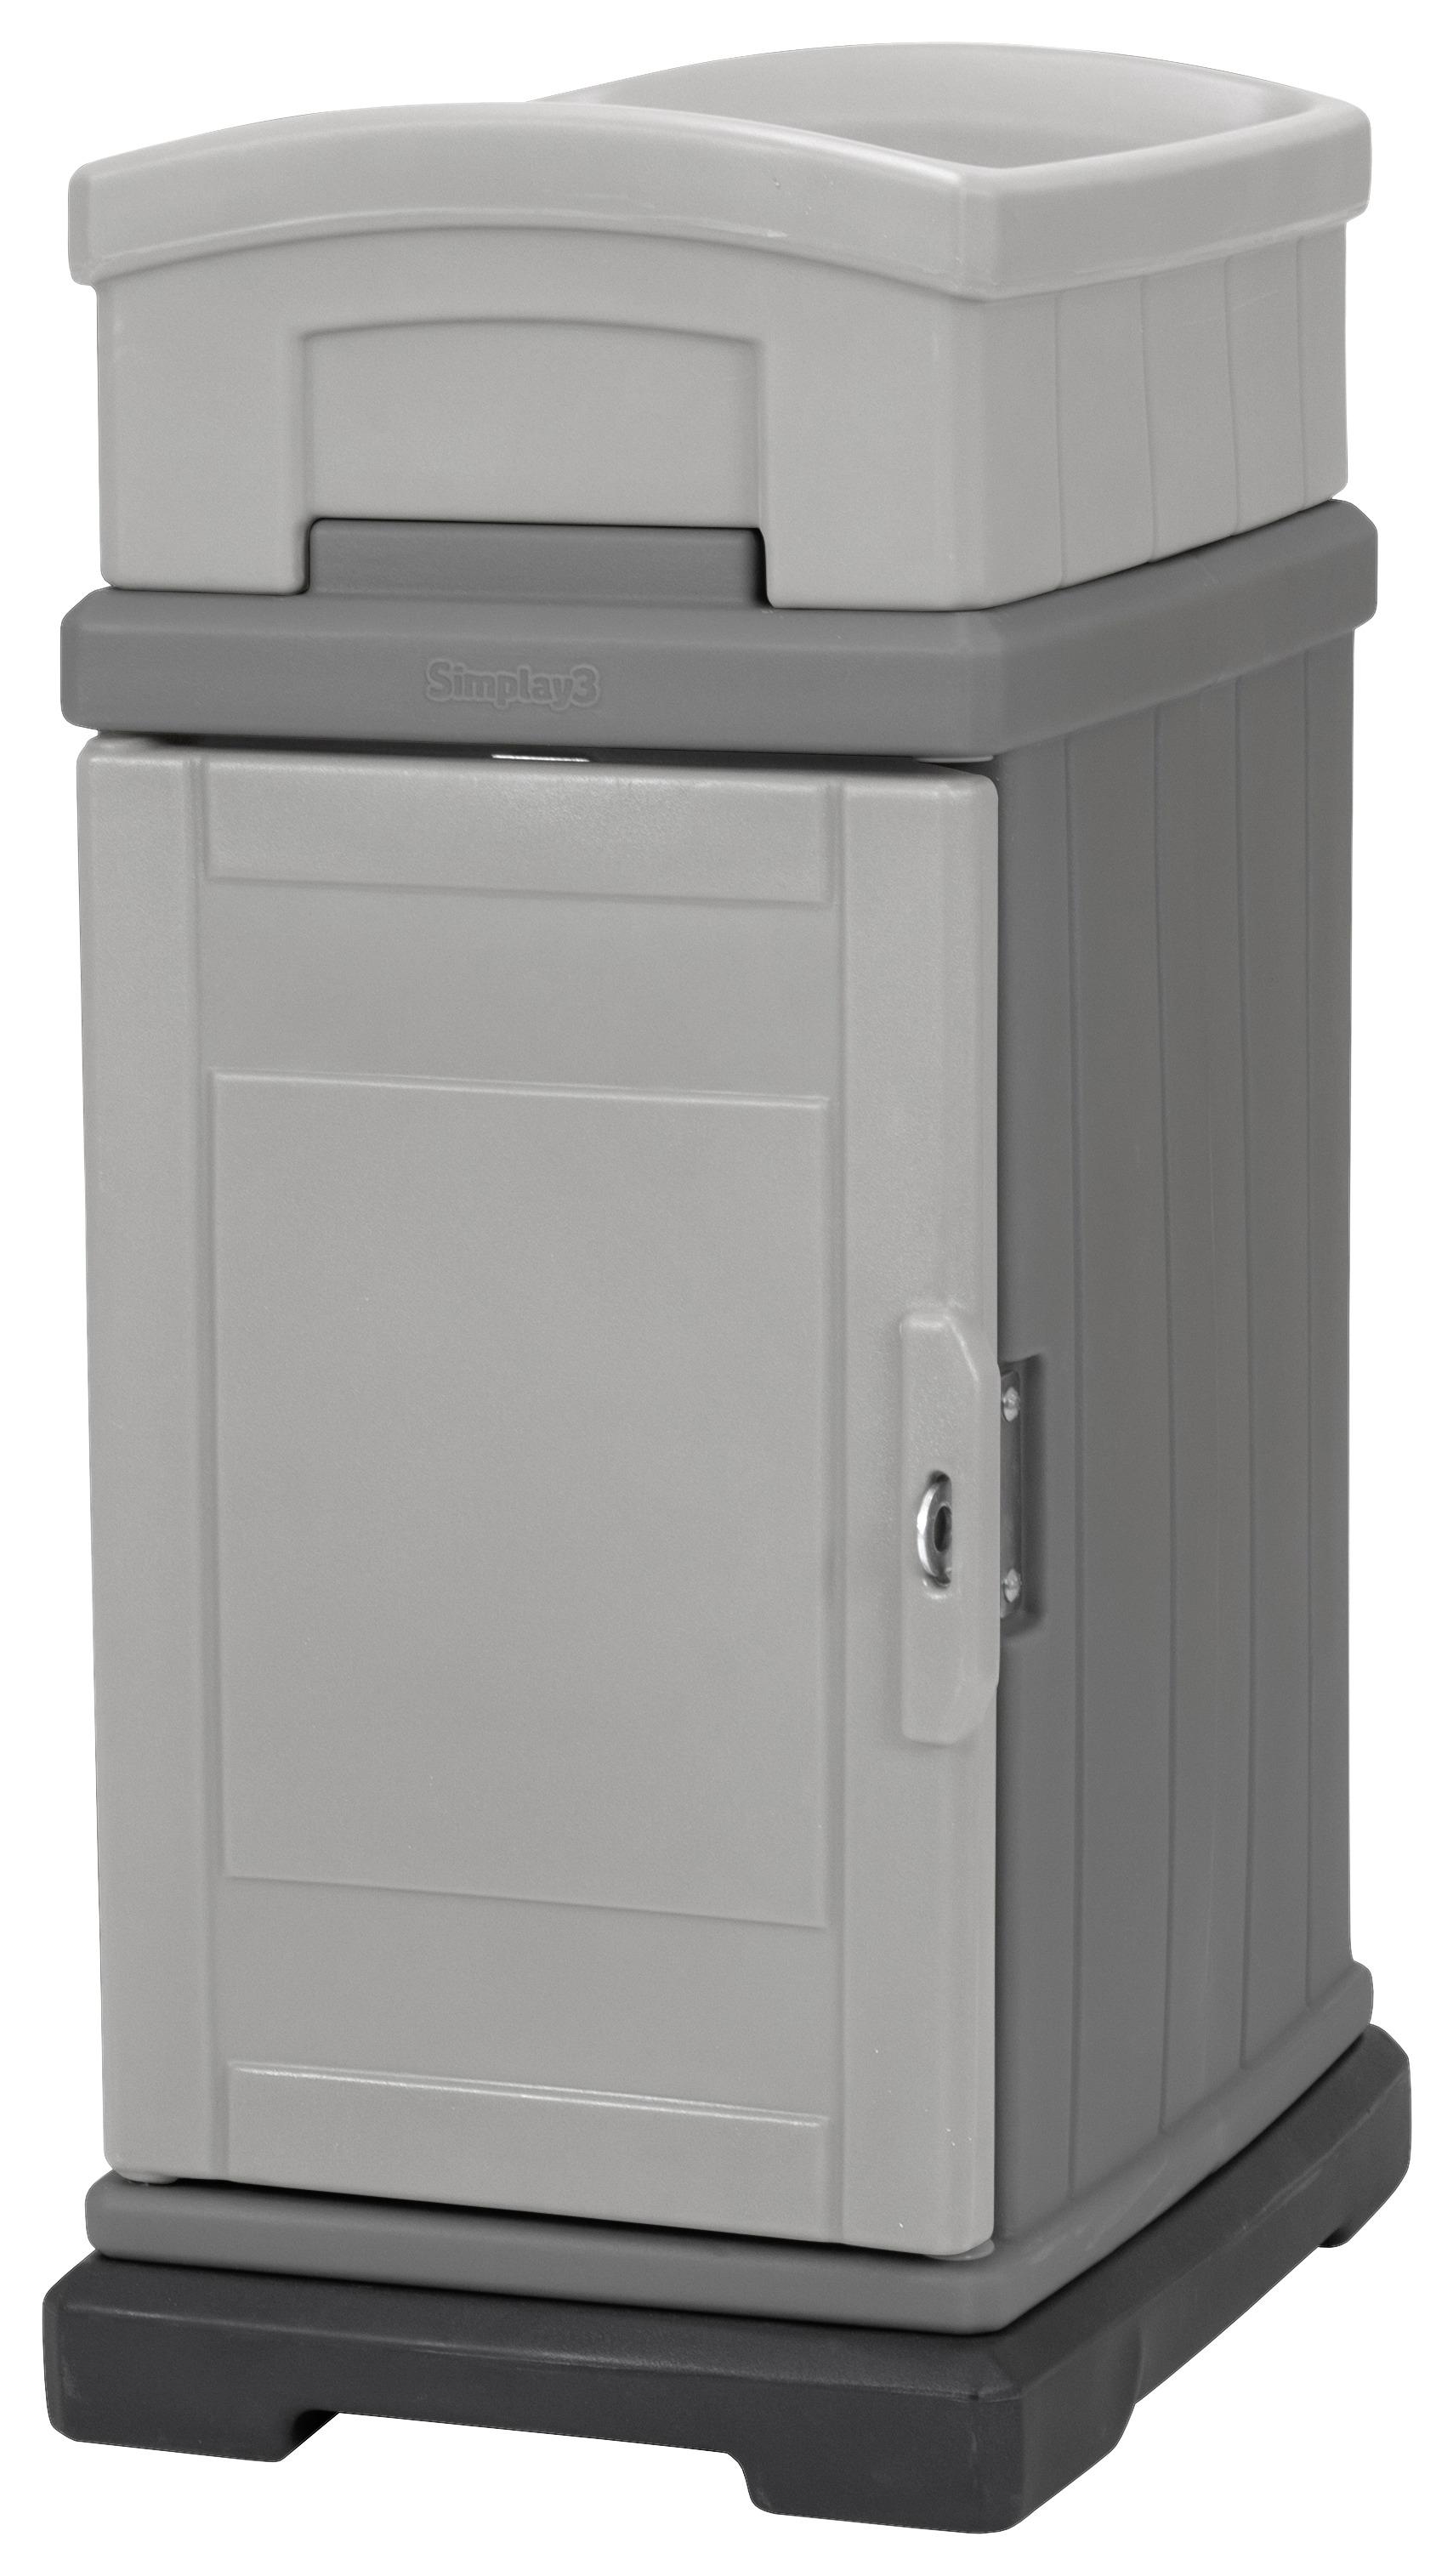 Paketbox Simplay 3 Hide Away - Grau, Basics, Kunststoff (56,5/42,5/98,1cm)